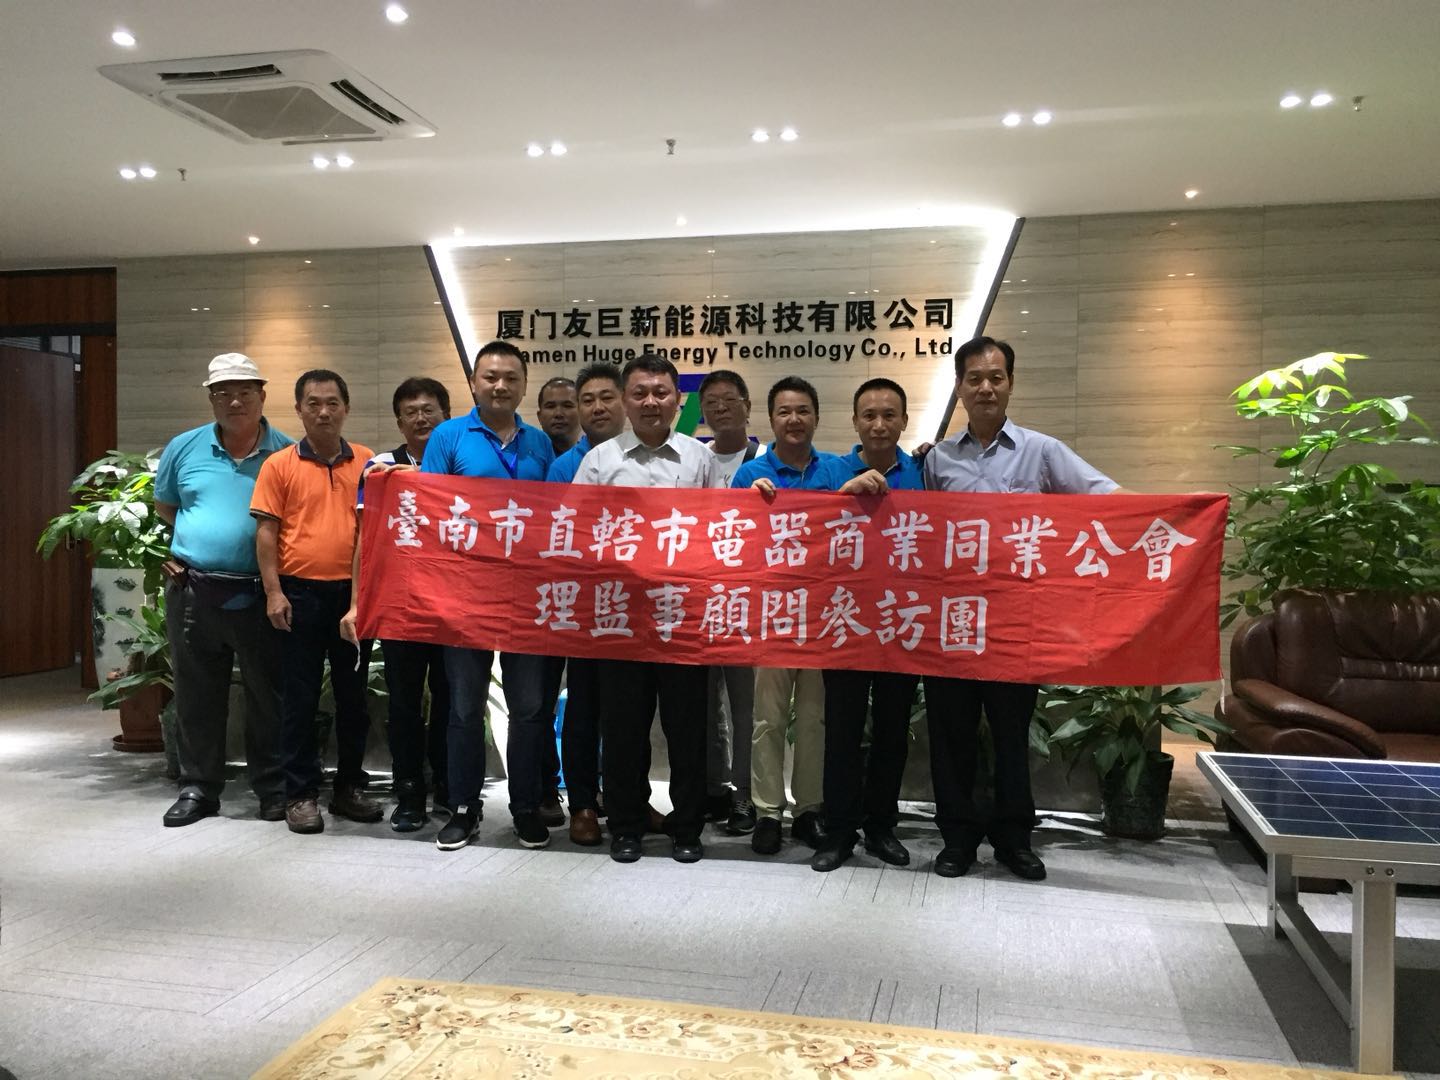 tayvan Tainan elektrikli ev aletleri iş birliği ve tayvan yeşil enerji çevre koruma komitesi liderleri ziyaret